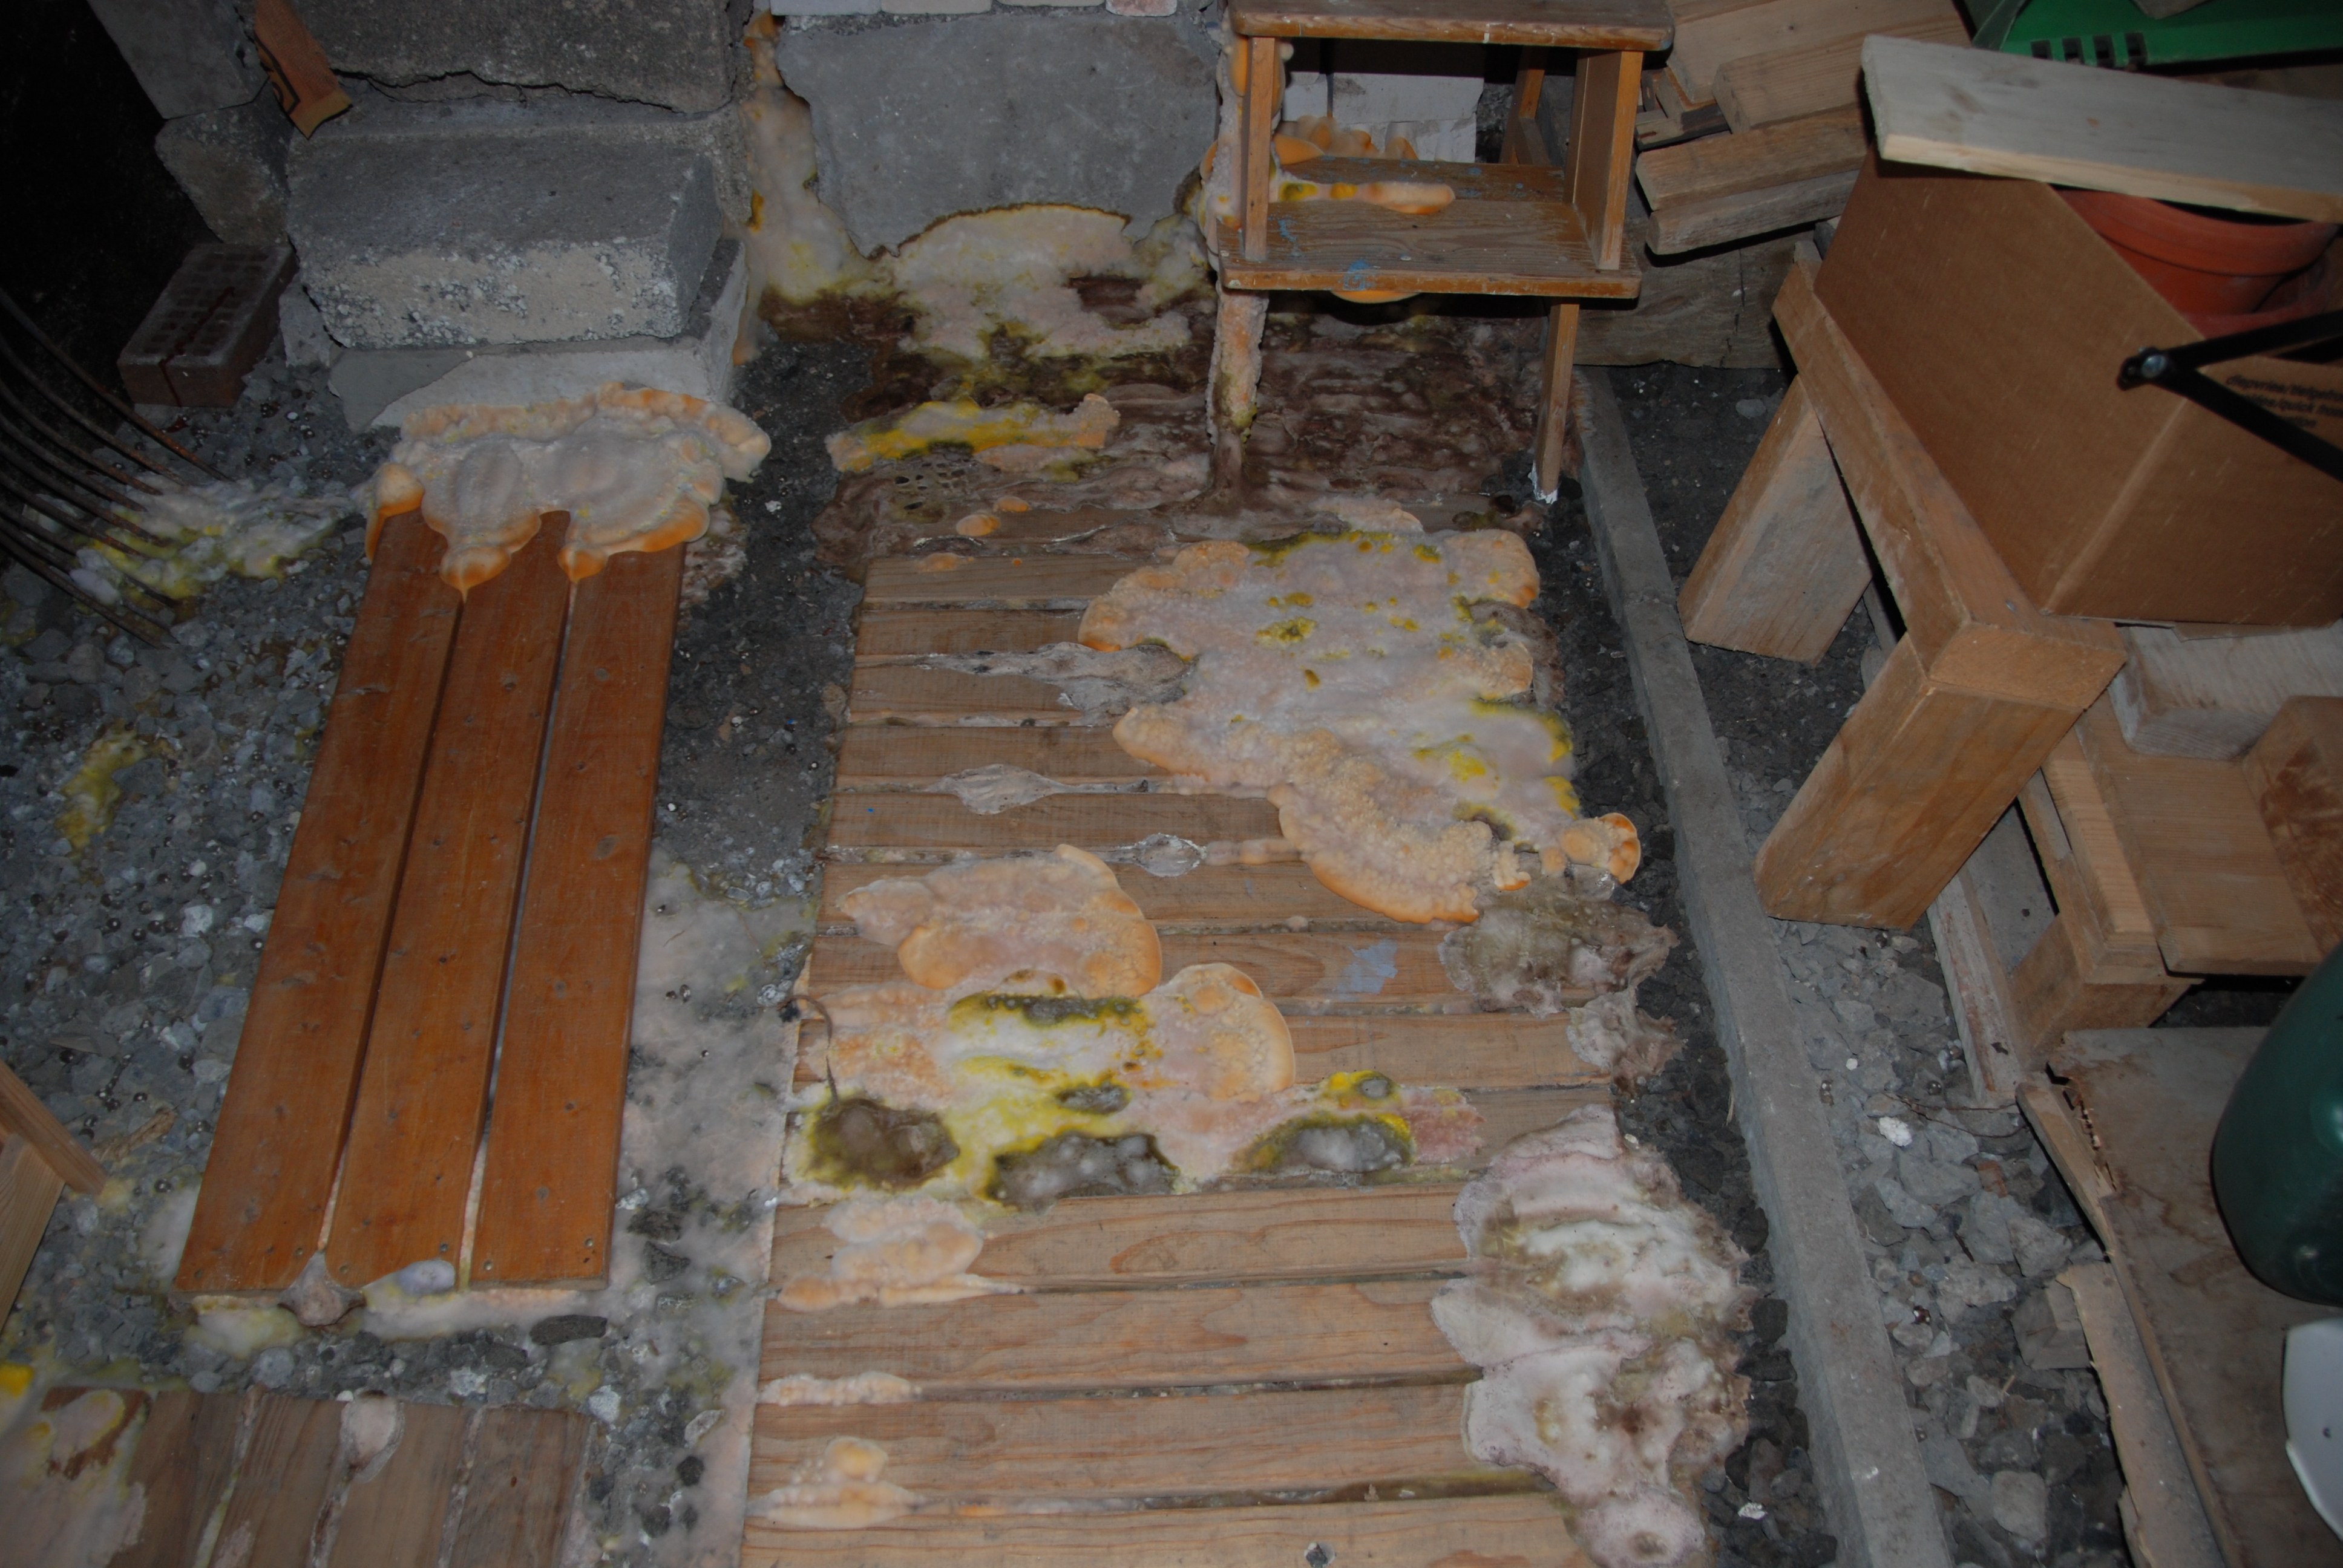 Kellerboden mit vielen Holzlatten und sonstigen Gerümpel, die mit der gefährlichen Pilzgattung Holzschwamm befallen sind.